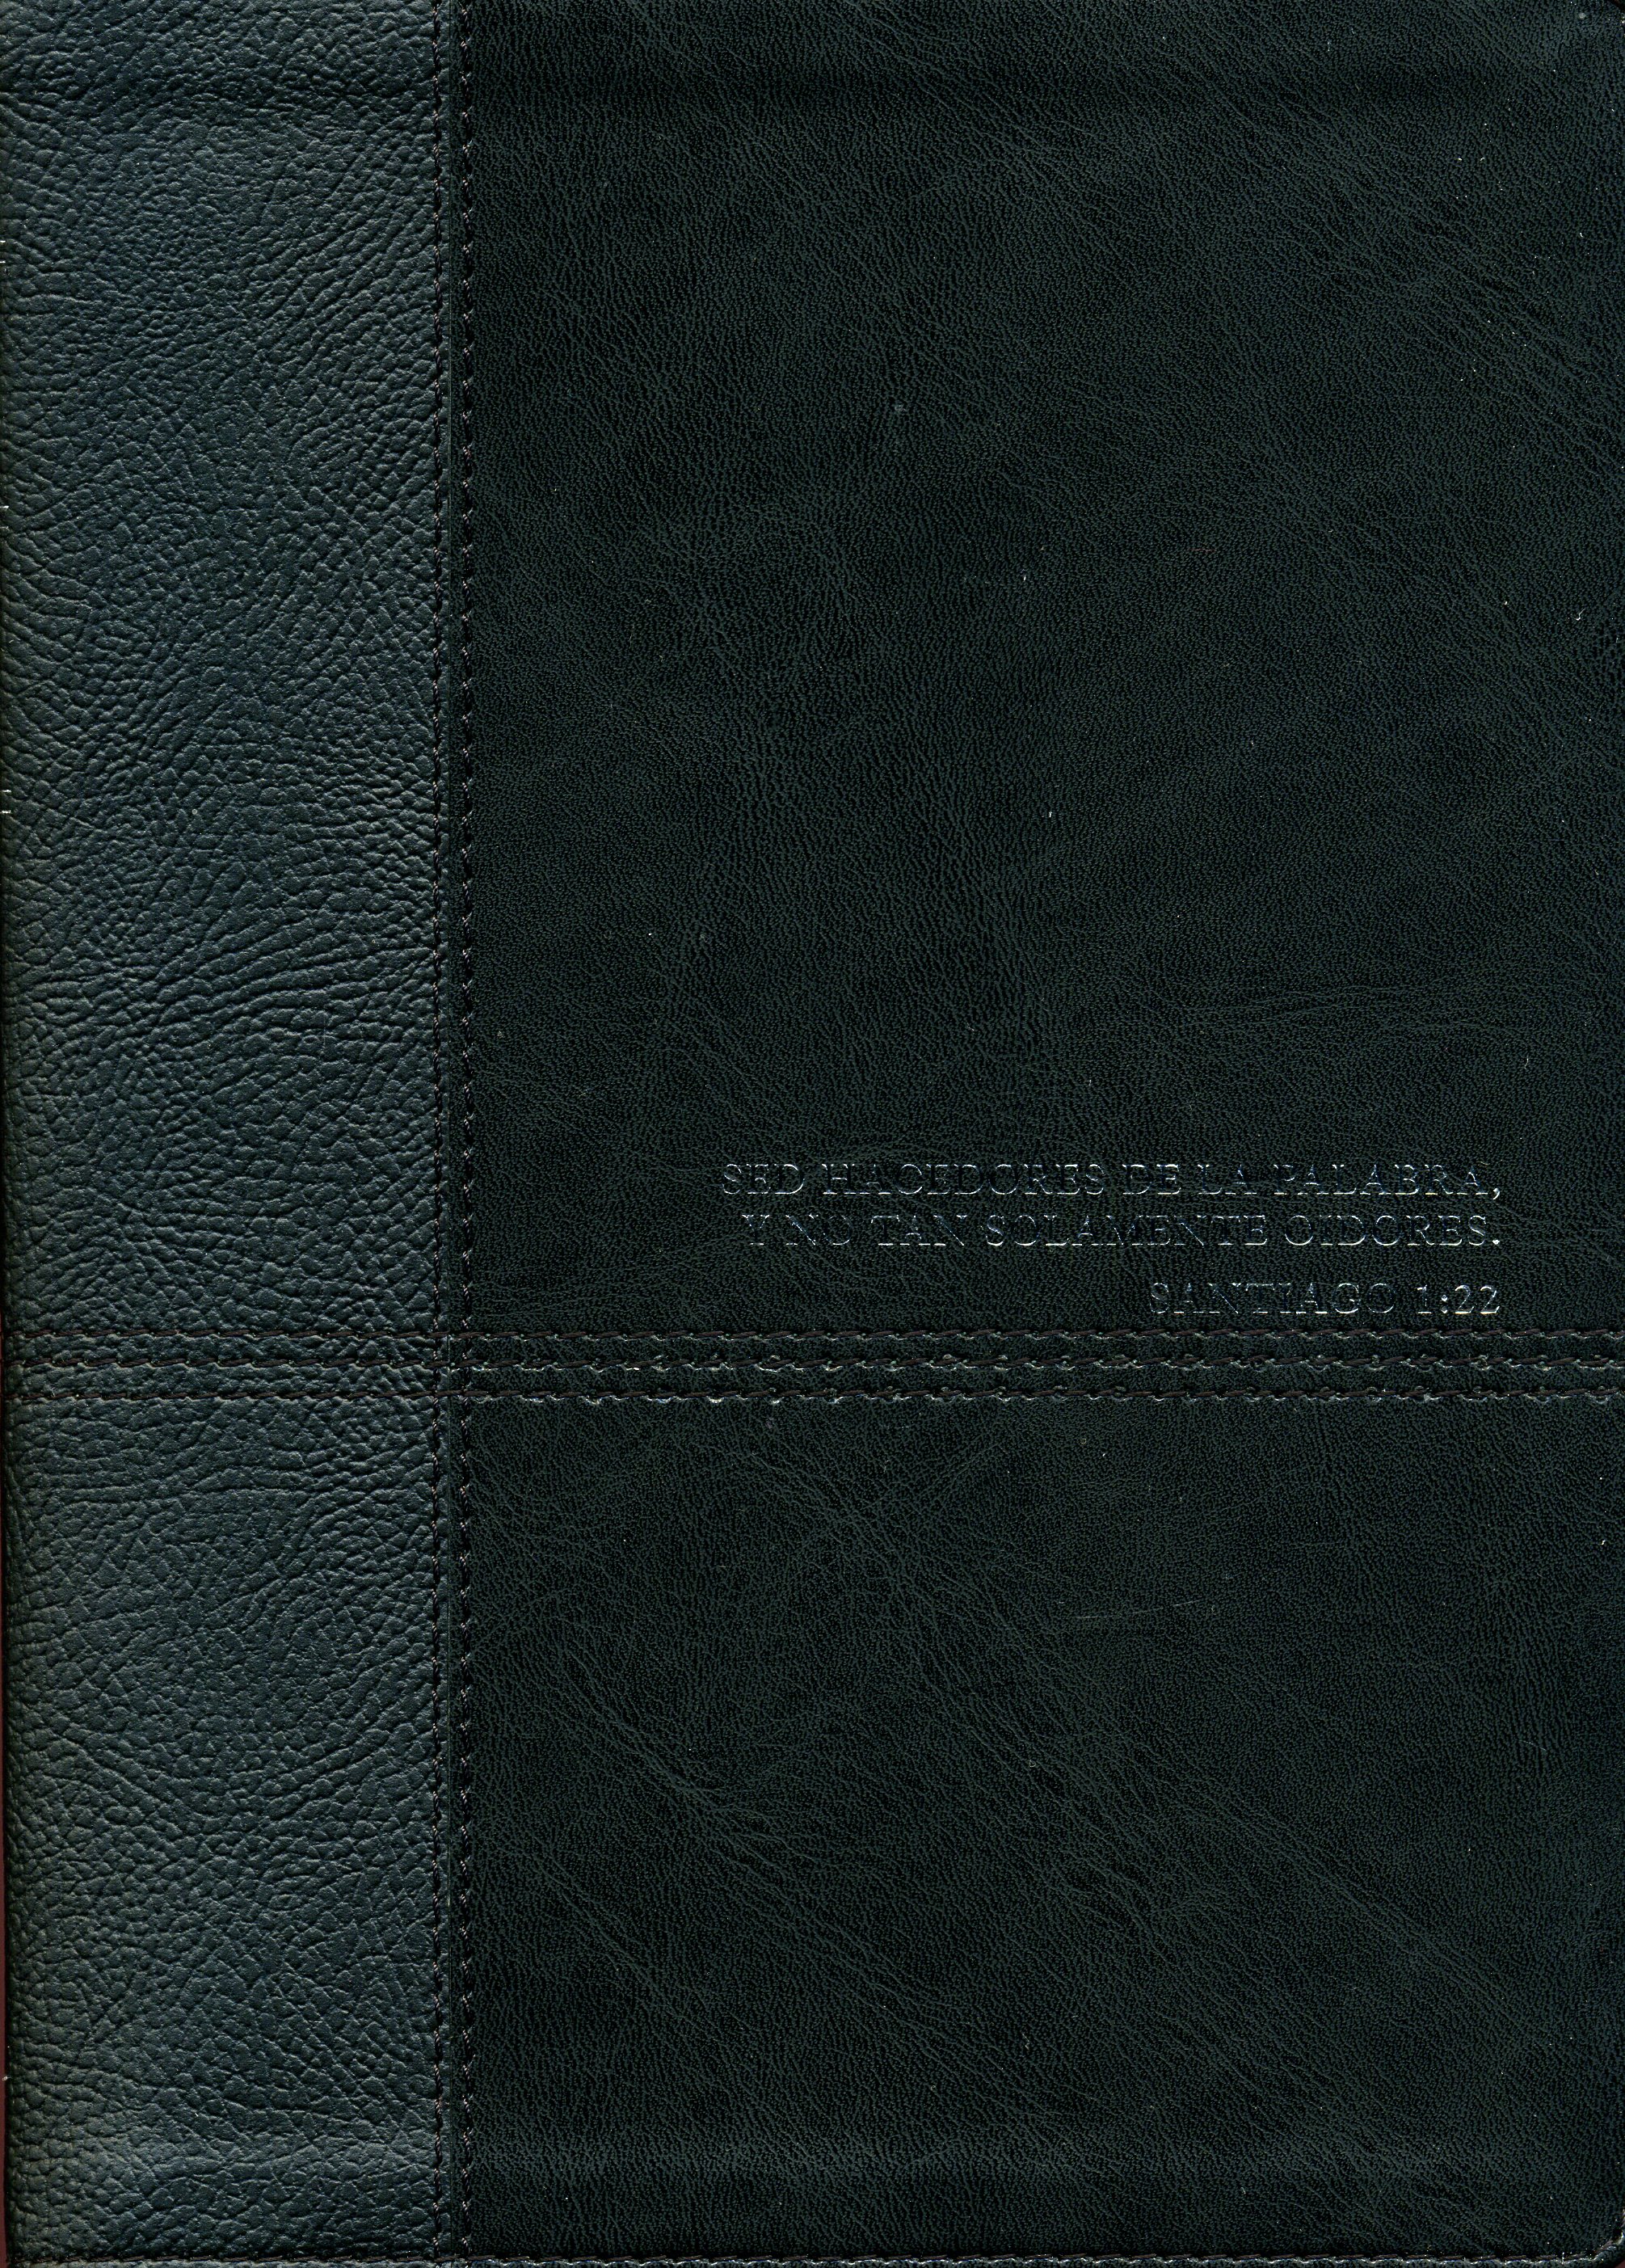 RVR 1960 Biblia de Estudio Diario Vivir